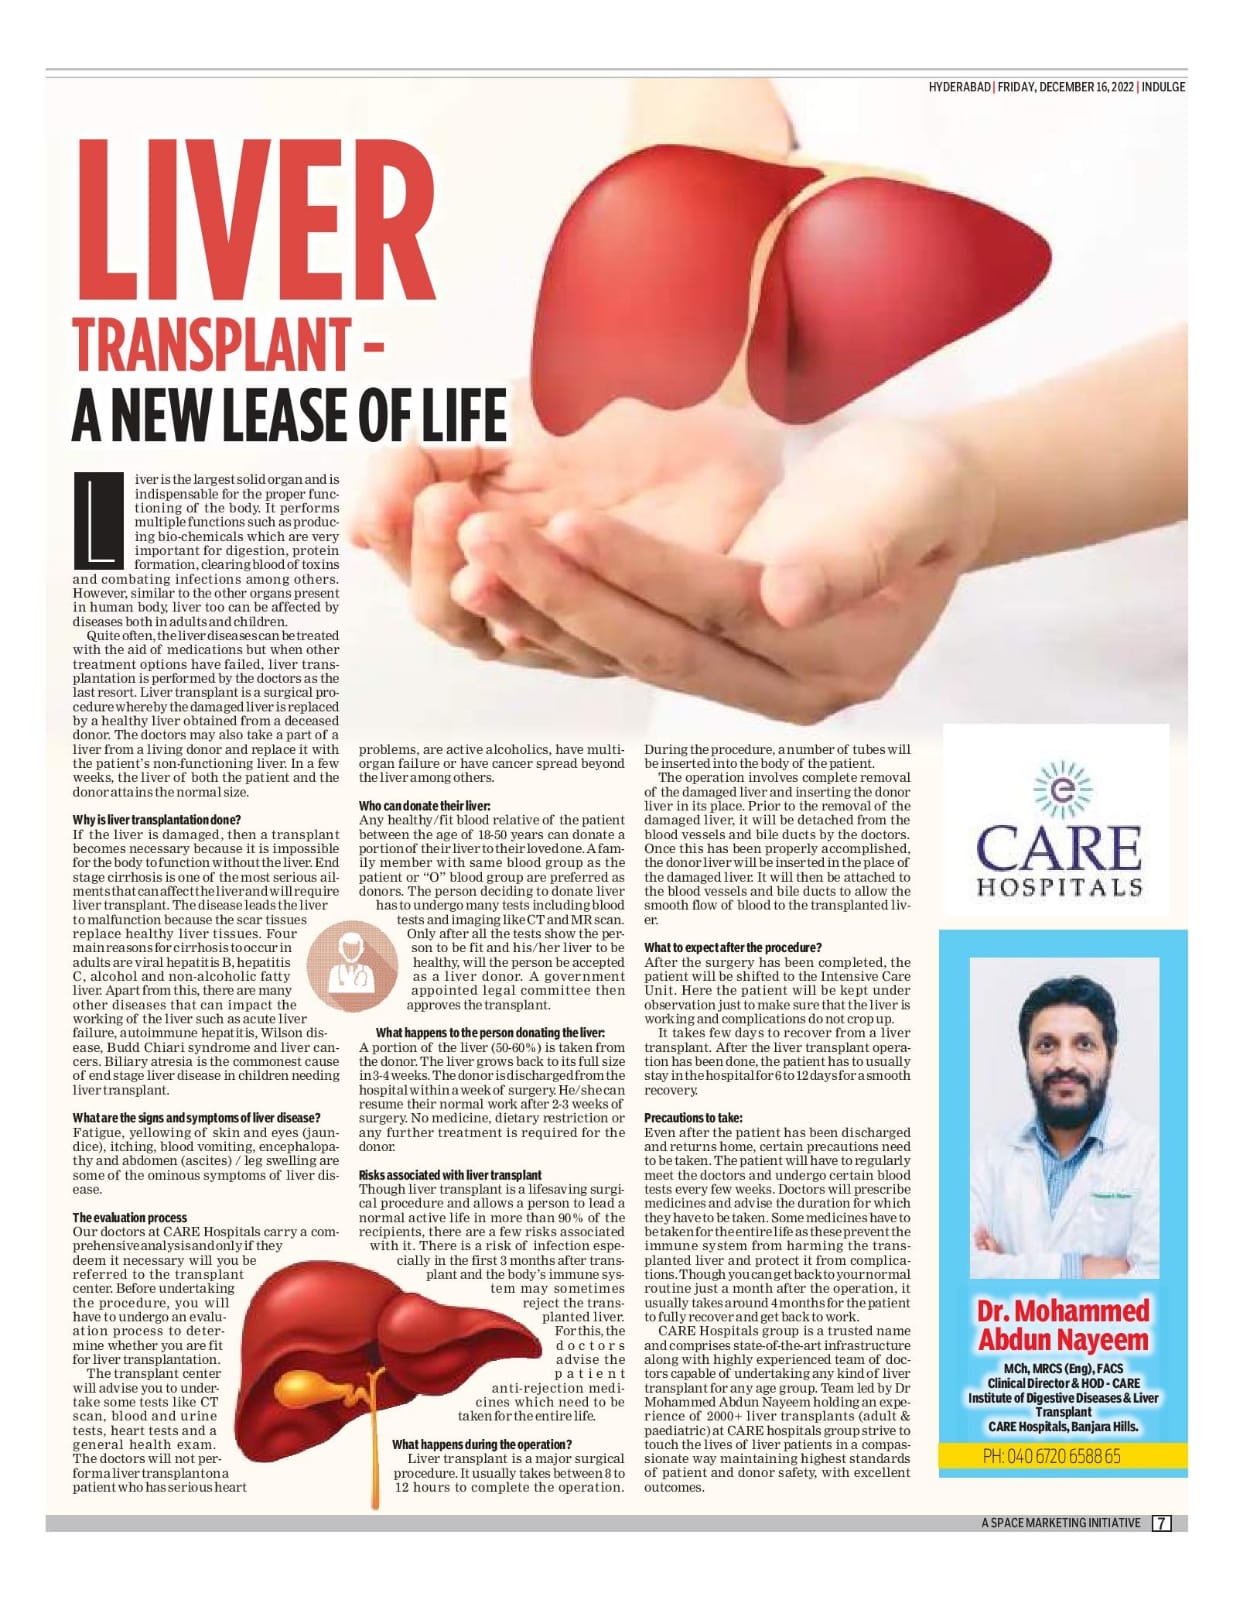 زراعة الكبد - فرصة جديدة للحياة